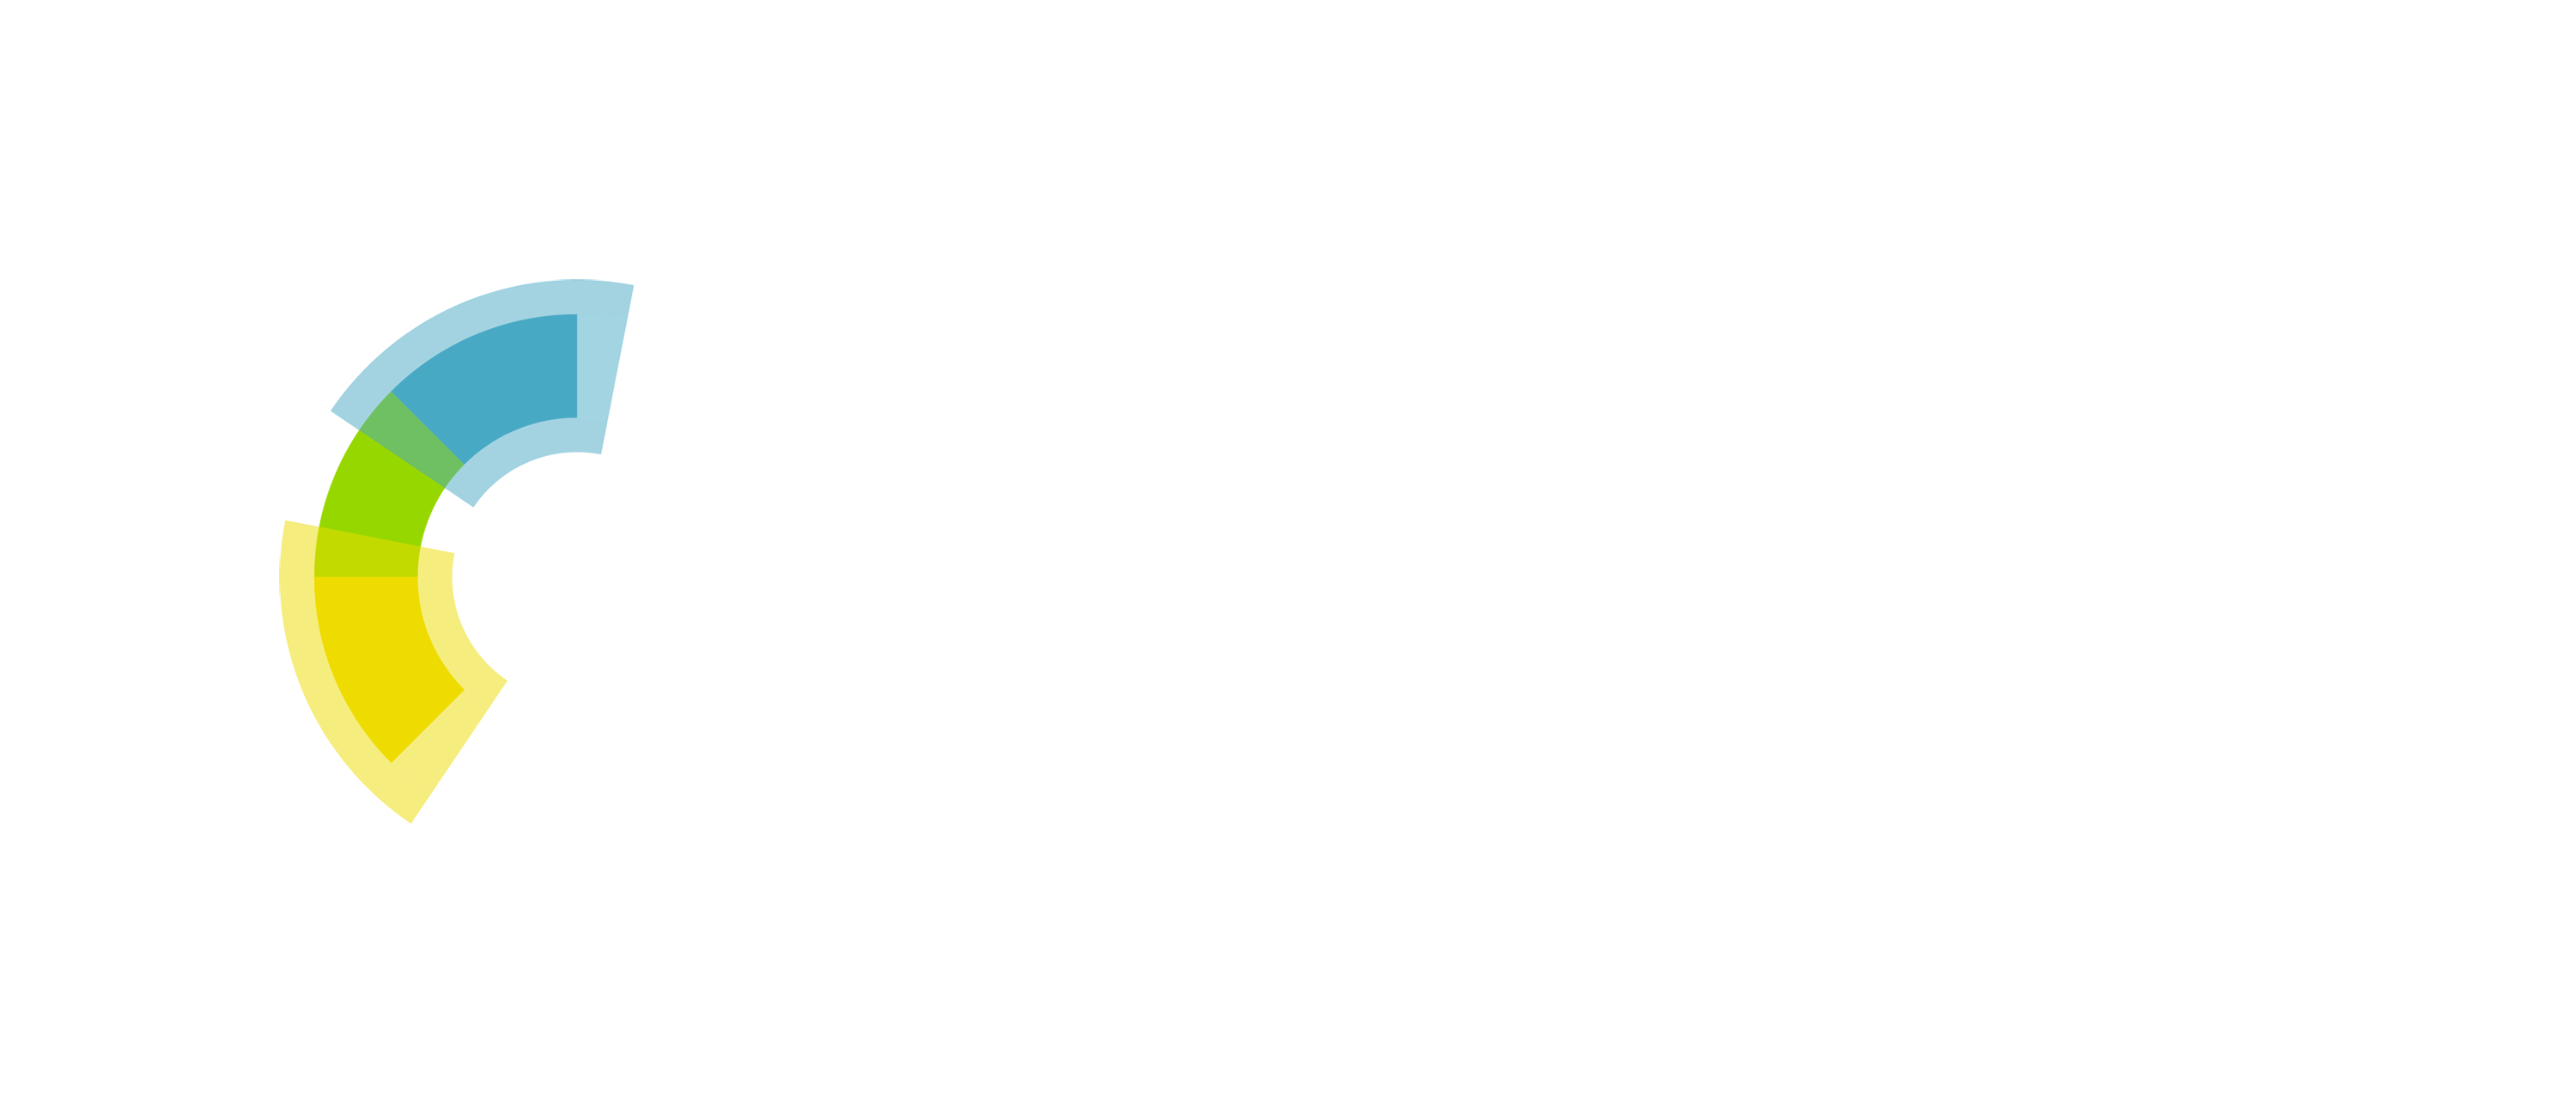 Royal Society of Chemistry logo.